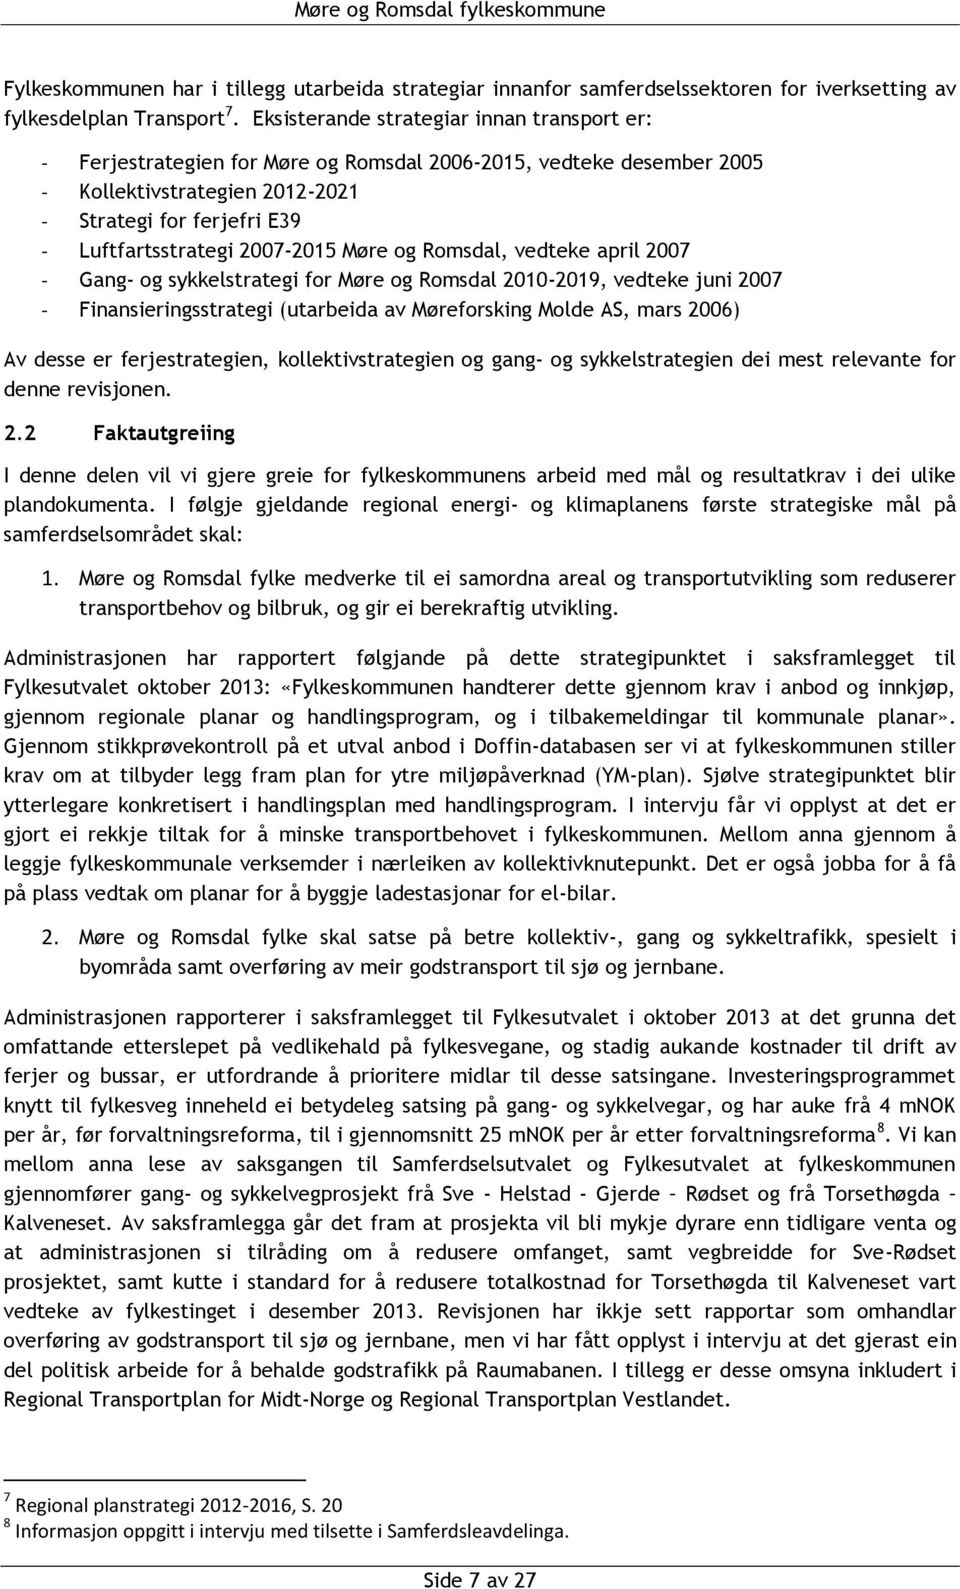 2007-2015 Møre og Romsdal, vedteke april 2007 - Gang- og sykkelstrategi for Møre og Romsdal 2010-2019, vedteke juni 2007 - Finansieringsstrategi (utarbeida av Møreforsking Molde AS, mars 2006) Av